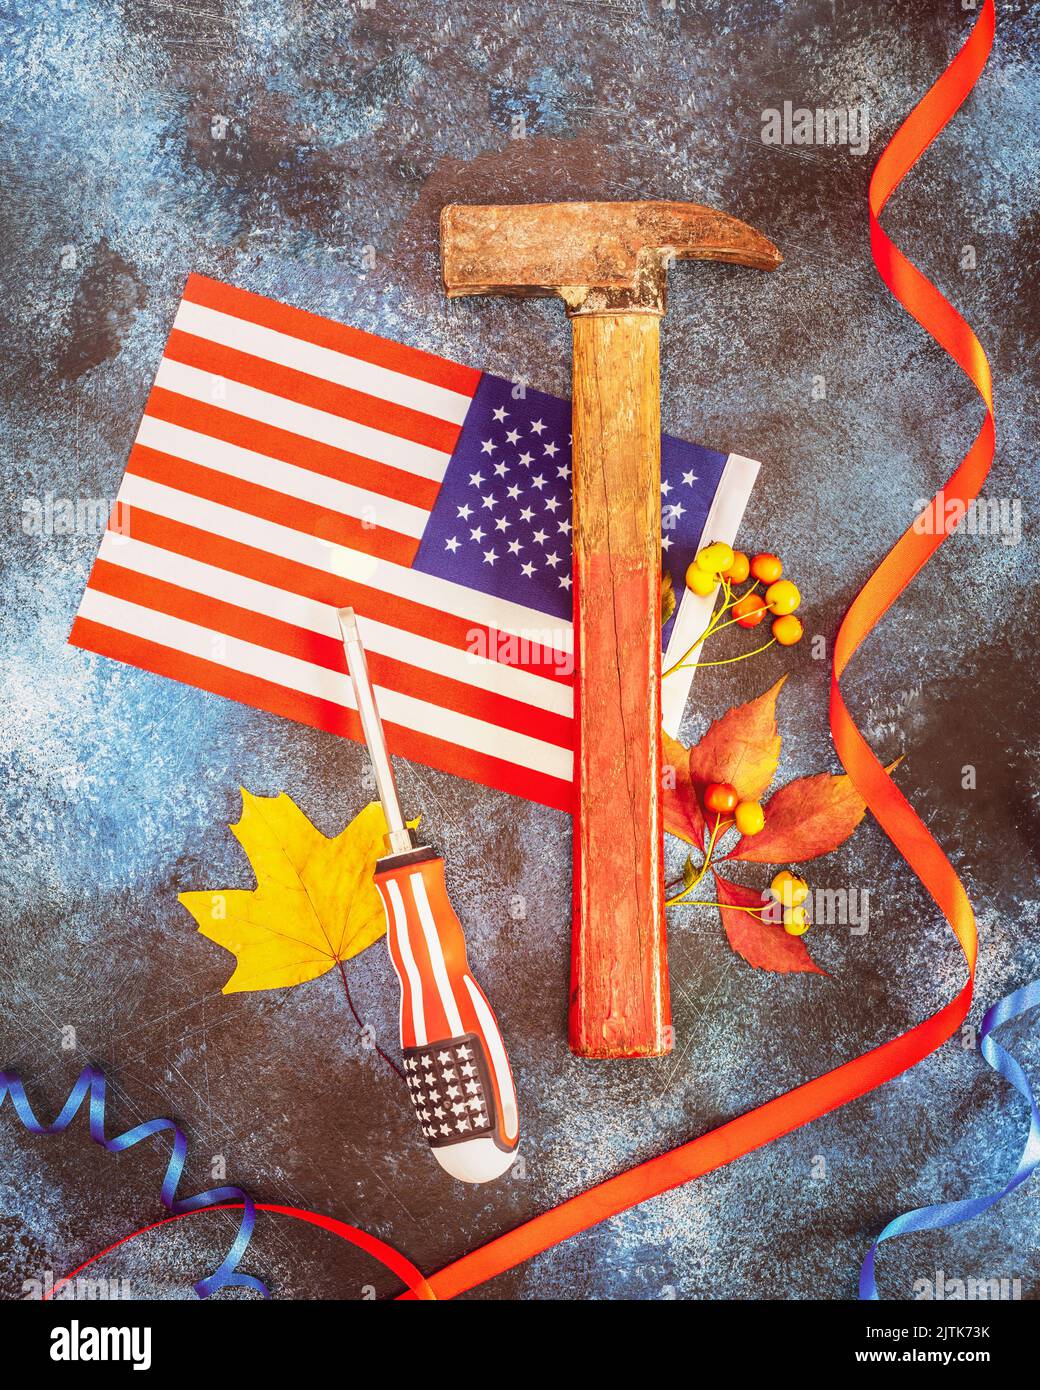 Labor Day Karte mit amerikanischer Flagge, Hammer, Schraubendreher, Herbstblättern und rotem Band auf blauem texturiertem Hintergrund. Labor Day ist Amerika und Kanada tr Stockfoto